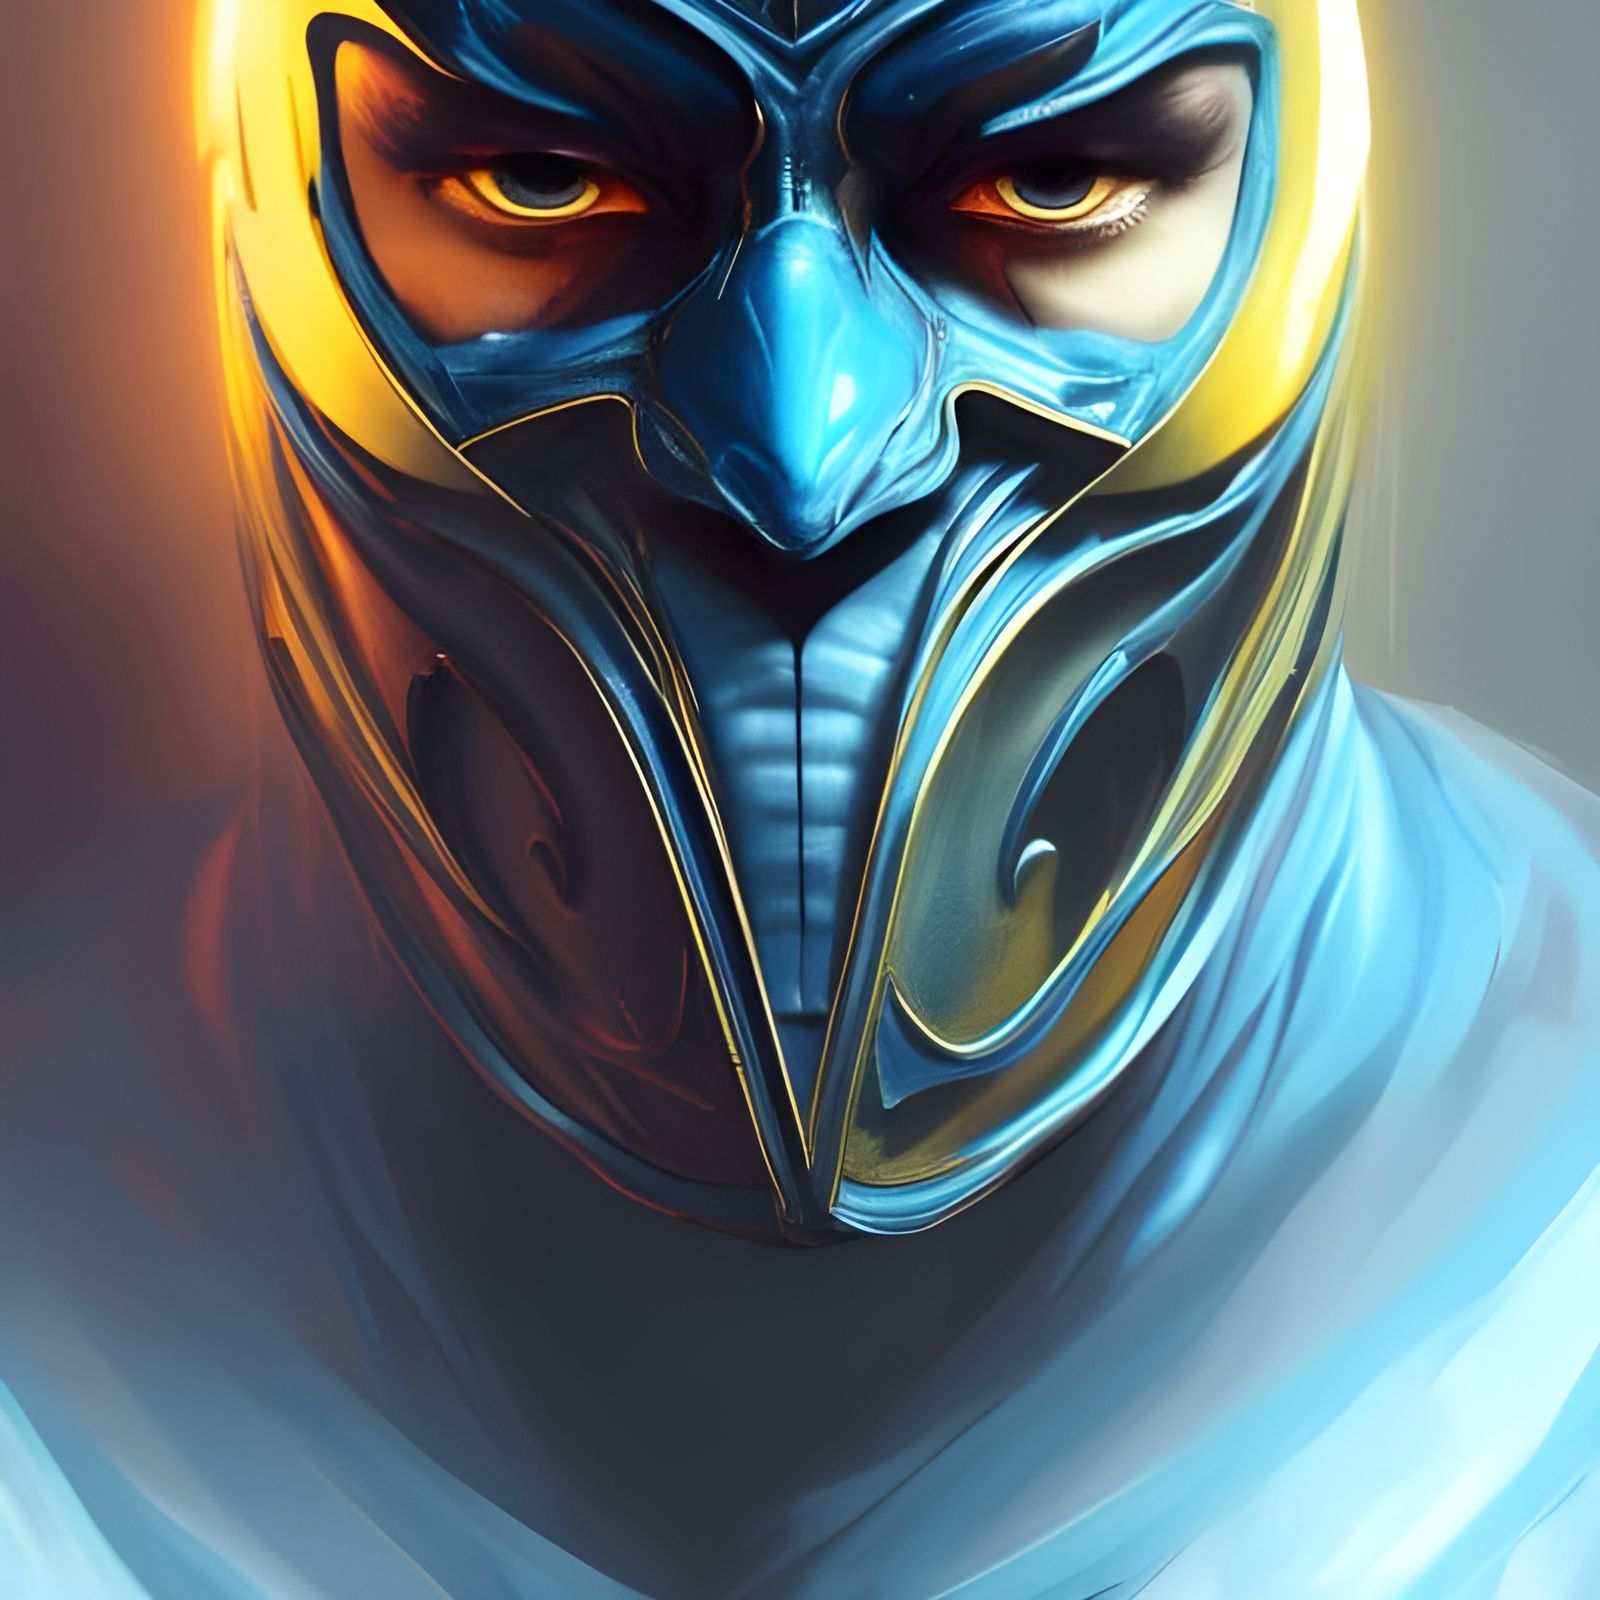 Mortal Kombat: Noob Saibot - AI Generated Artwork - NightCafe Creator